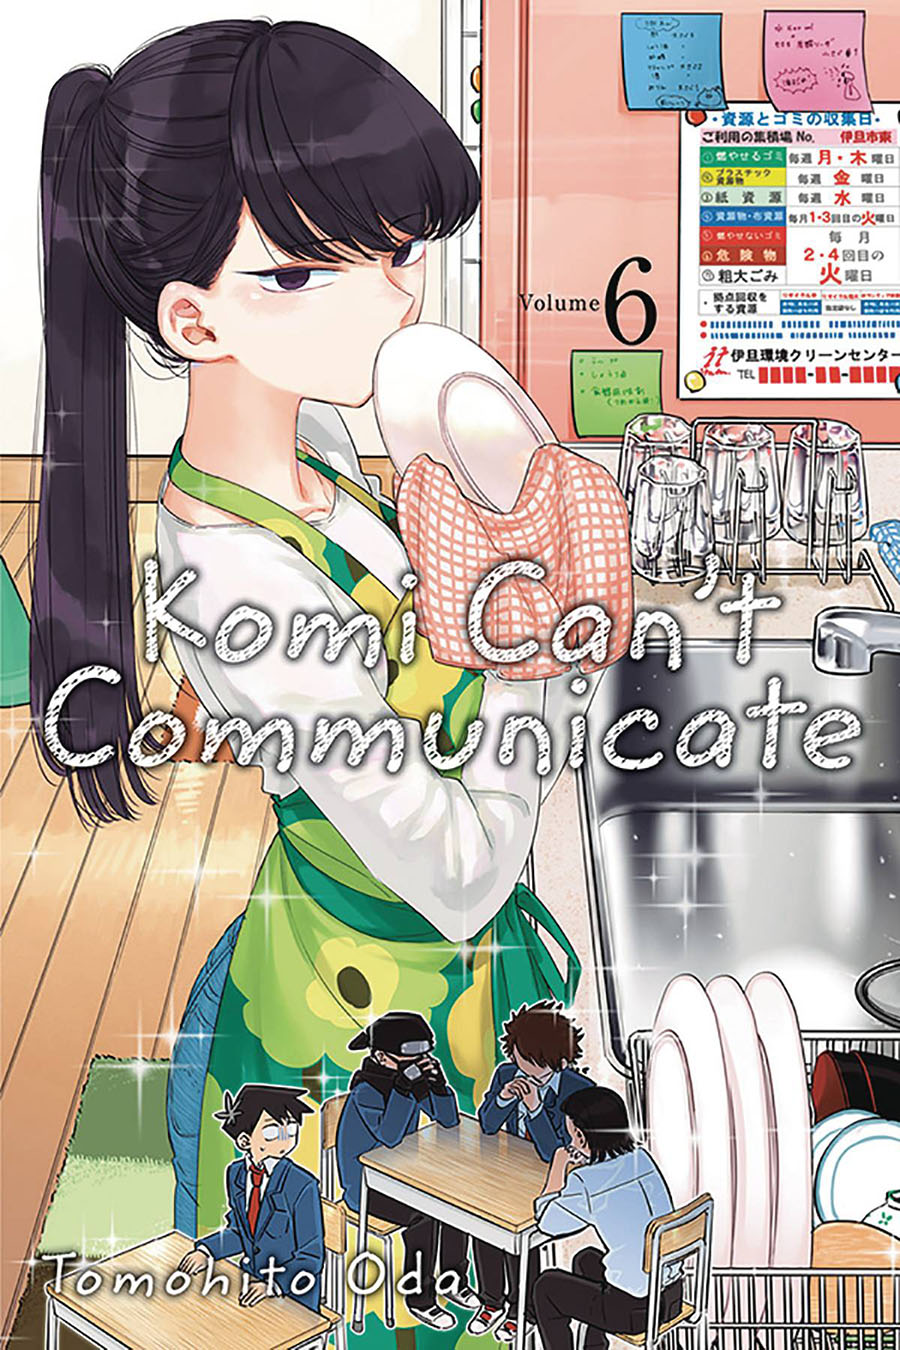 Komi Cant Communicate Vol 6 GN